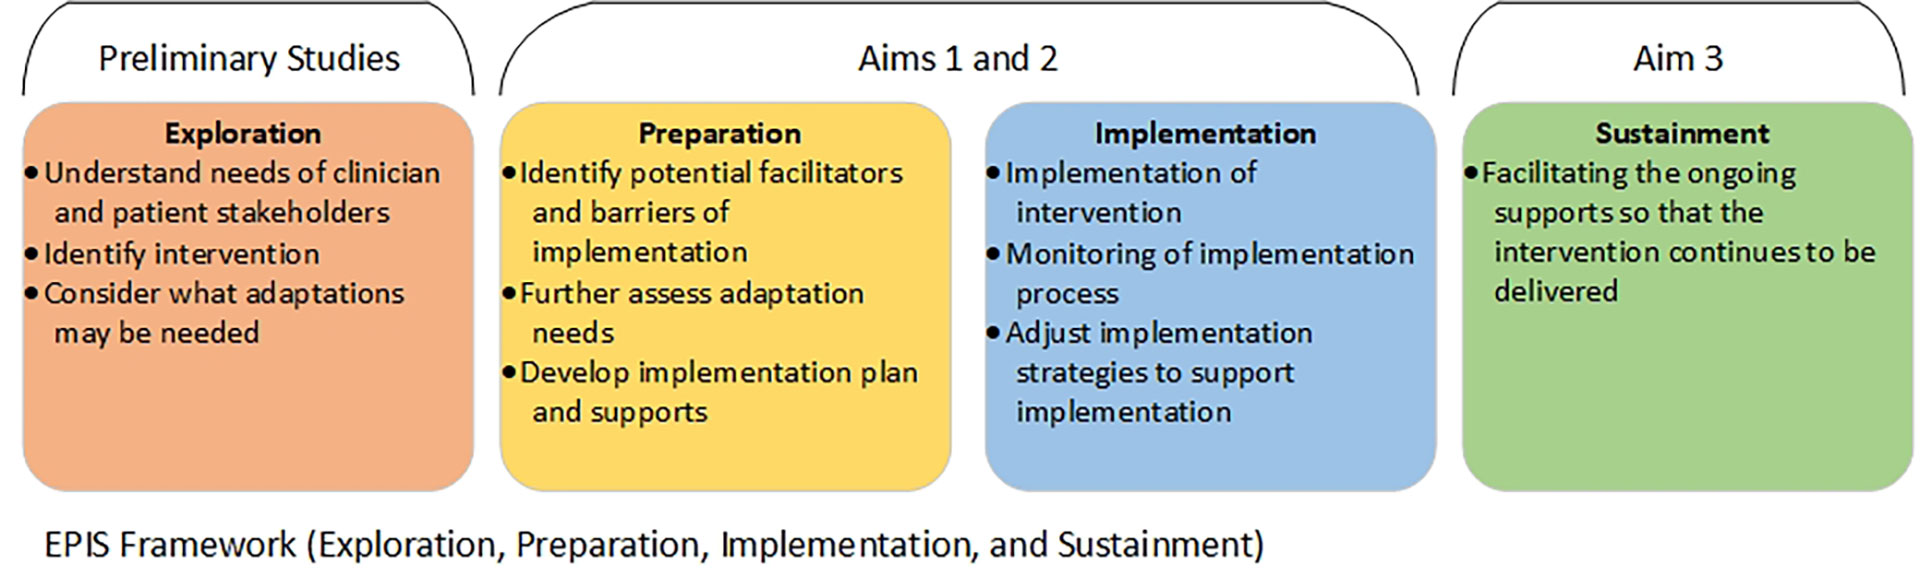 EPIS Framework